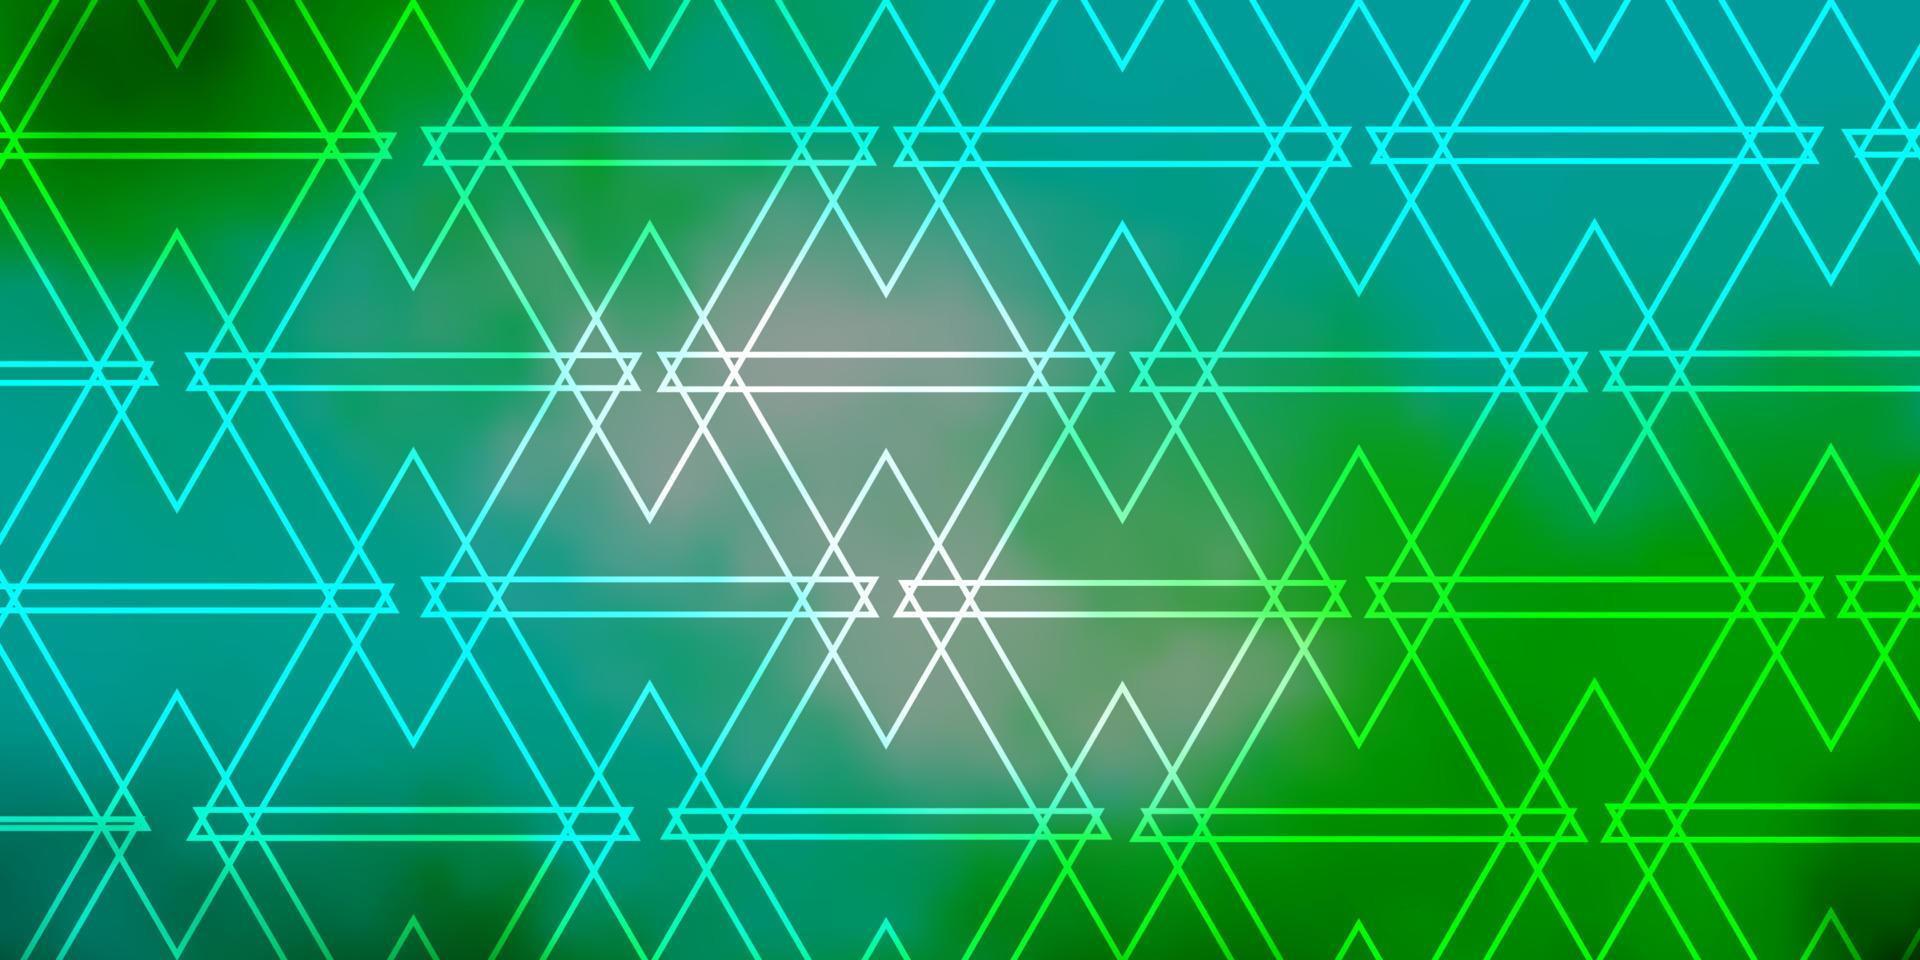 sfondo vettoriale azzurro, verde con linee, triangoli.